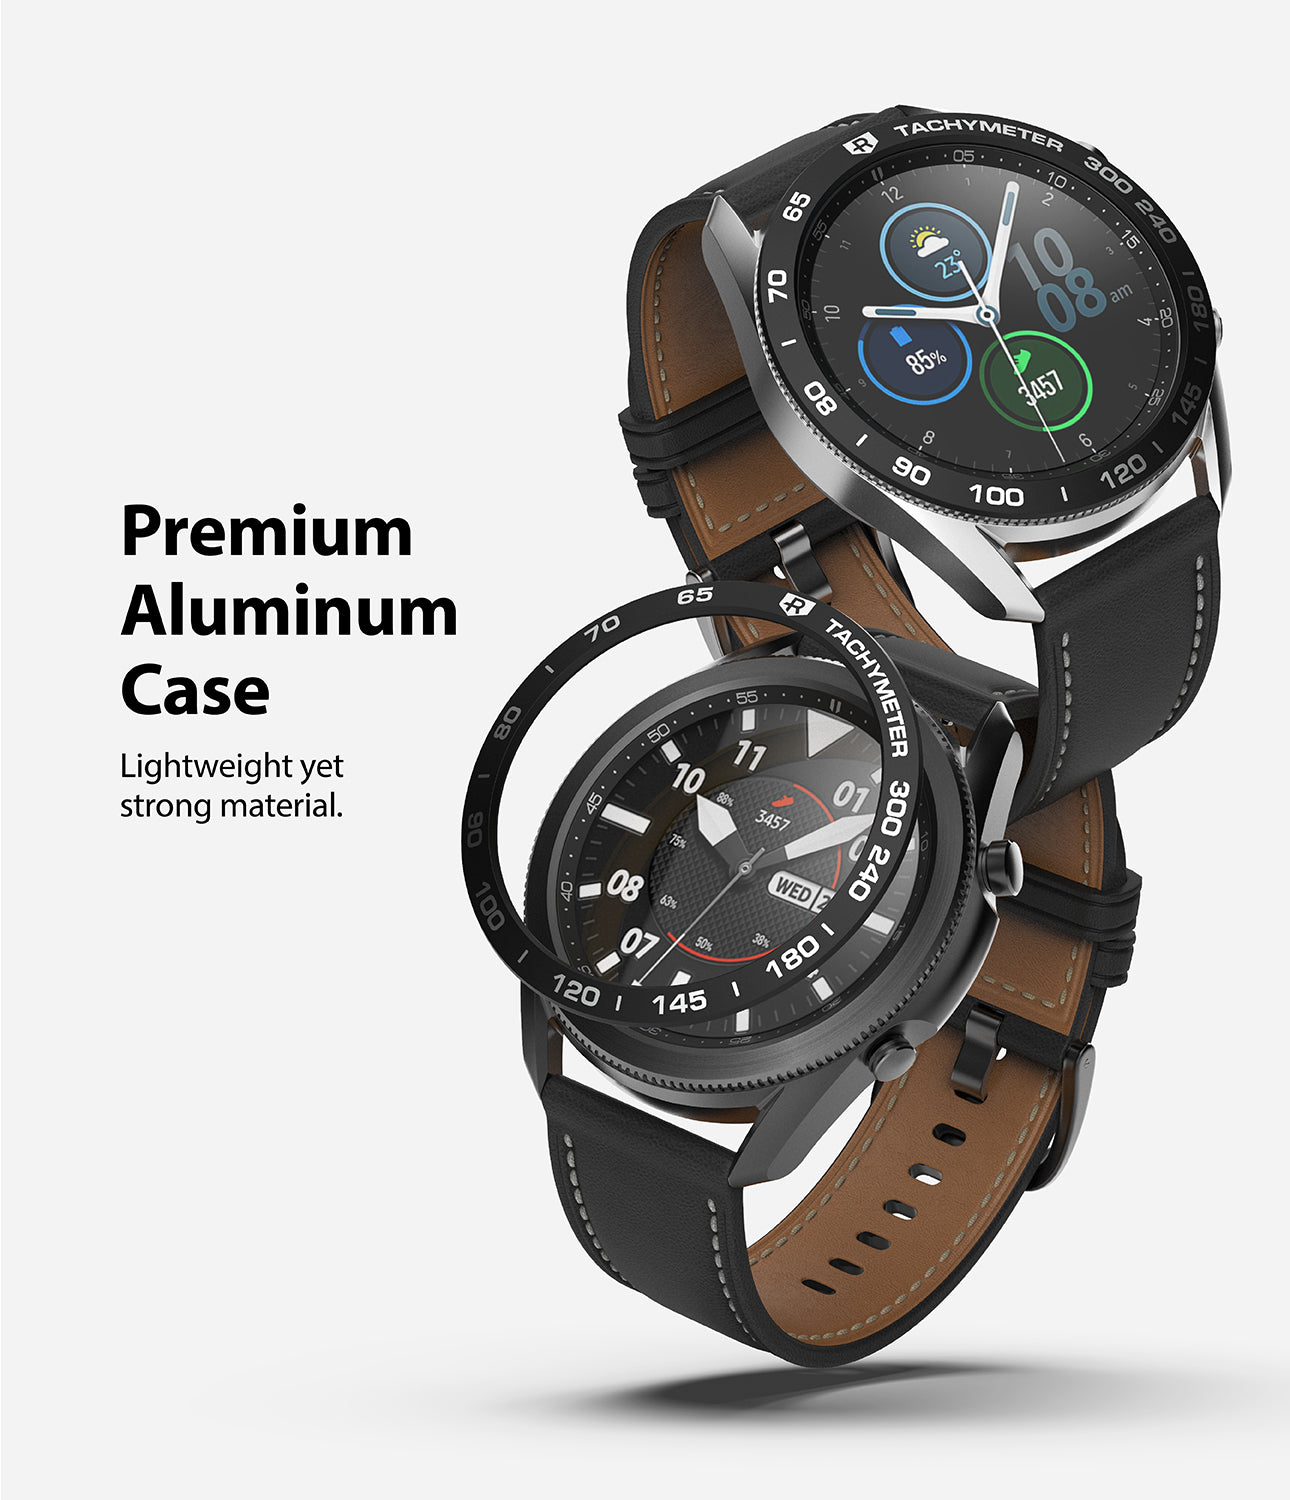 premium aluminium case - lightweight and strong